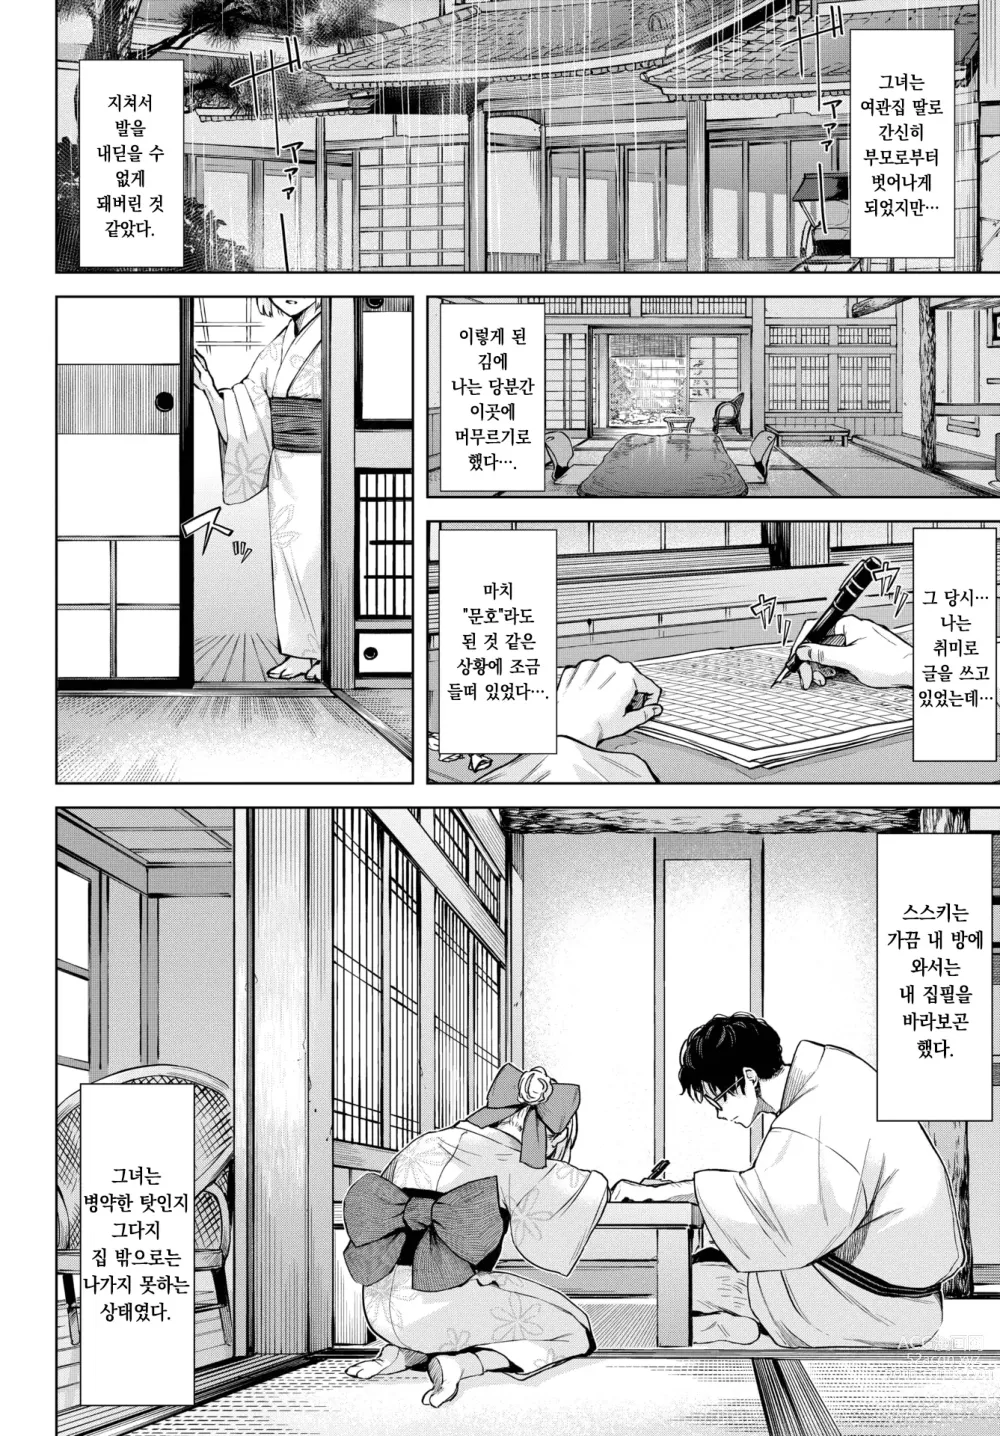 Page 3 of manga 치자빛